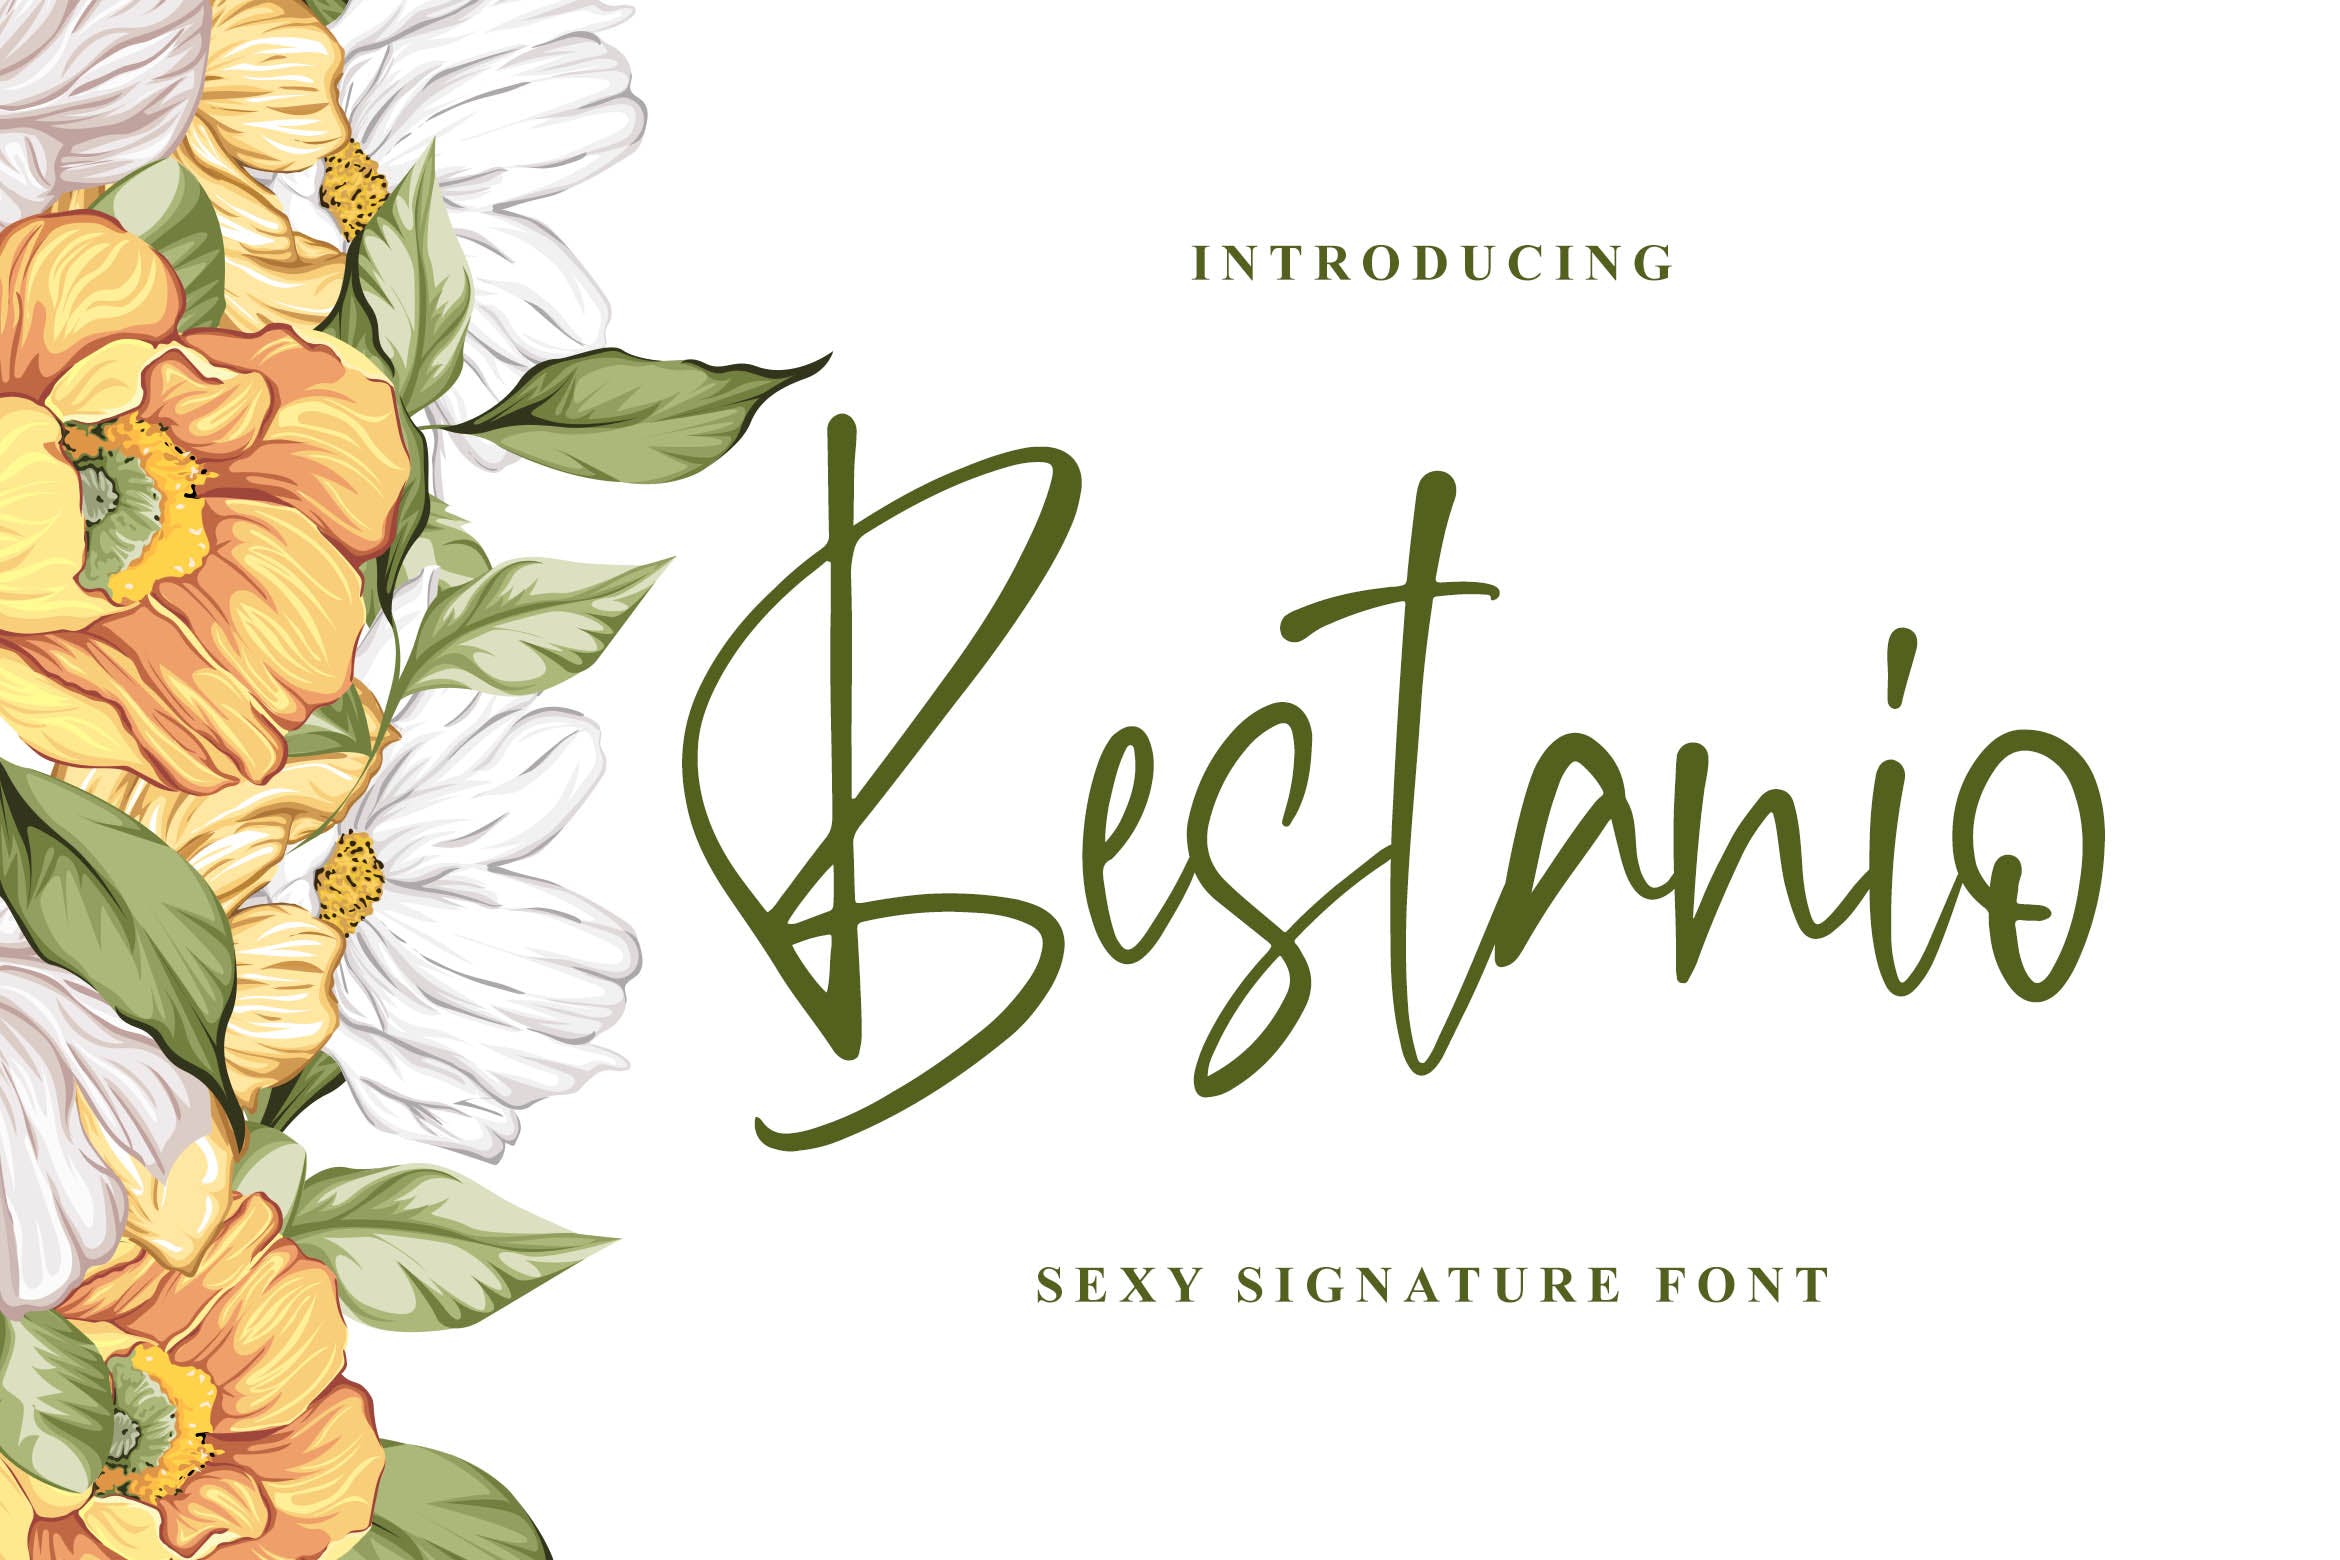 性感时尚英文签名字体亿图网易图库精选 Bestanio – Sexy Signature Font插图